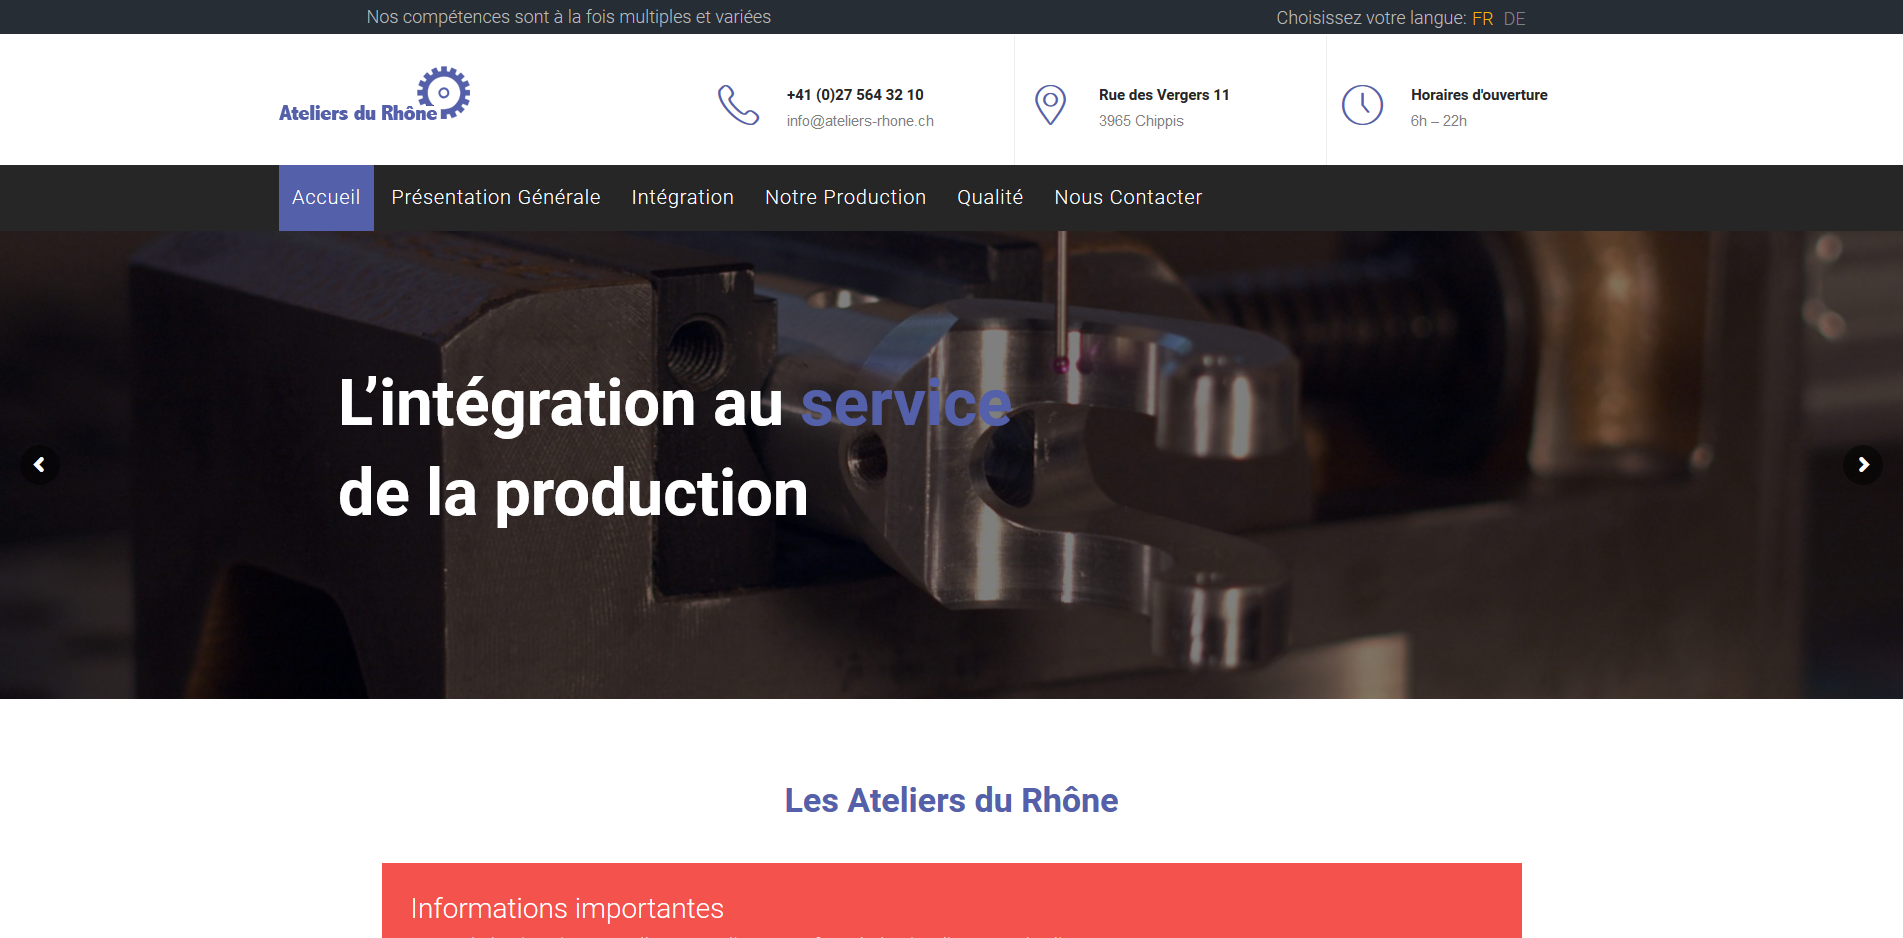 THALES IT - Réalisation sites Internet - Agence WEB - Ateliers du Rhône